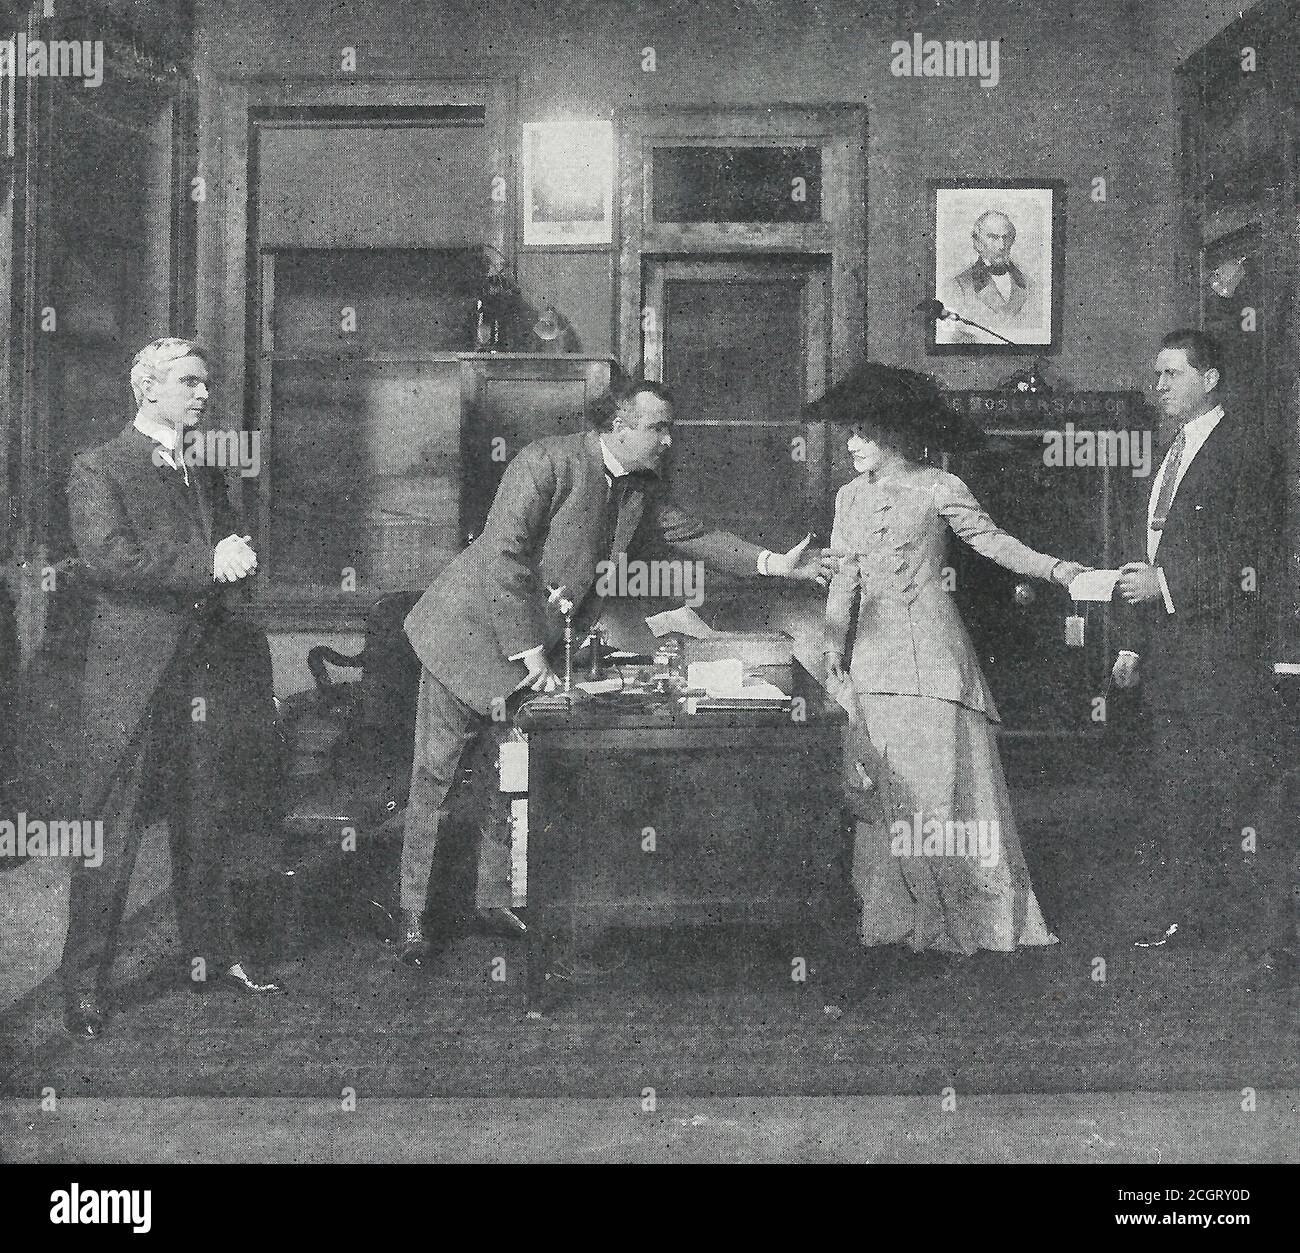 Di nuovo perseguendo i documenti - scena dal nome sulla porta - UN gioco di Broadway, circa 1910 Foto Stock